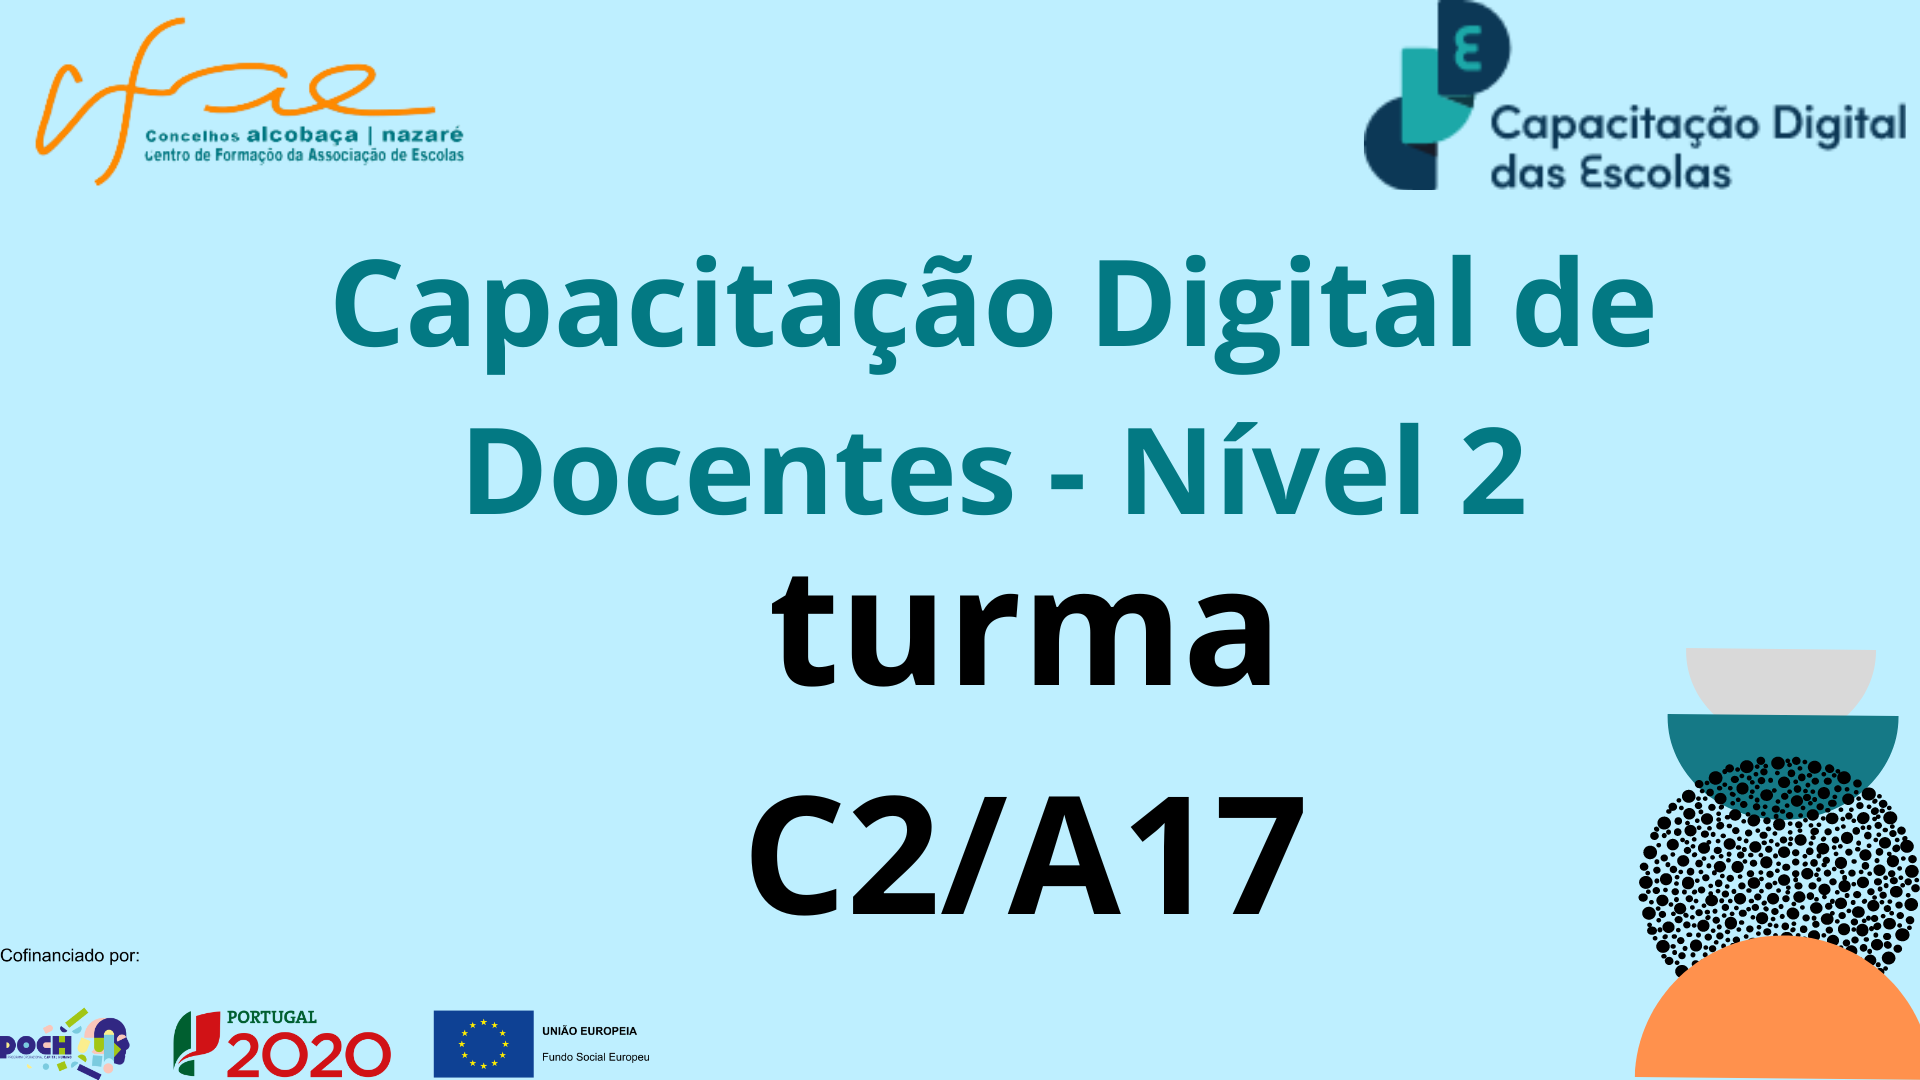 Capacitação Digital de Docentes - Nível 2 - Turma C2/A17